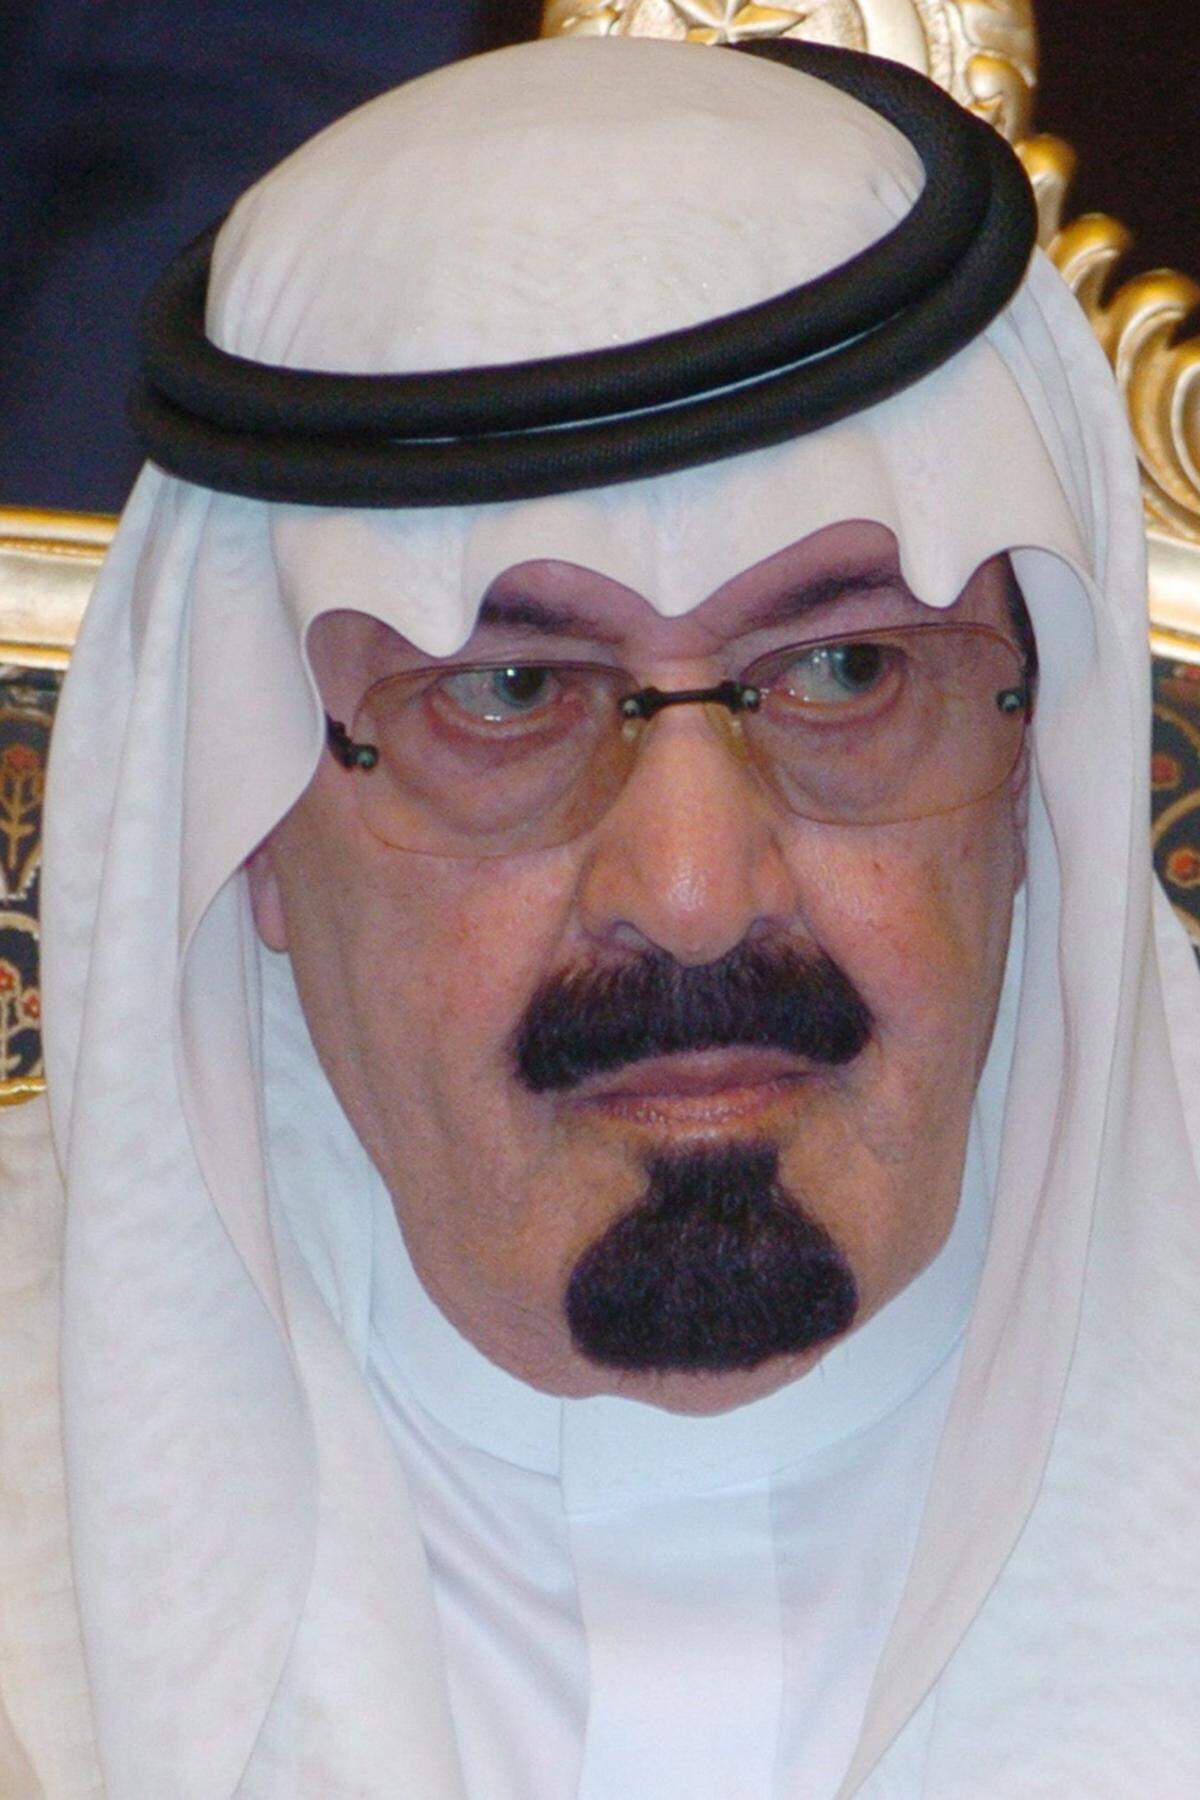 Die nächste Nuss ist härter zu knacken: Abdullah Bin Abdul-Aziz muss sich als König Saudi-Arabiens keiner Wahl stellen. Der Monarch des Öl-Staates sitzt seit 2005 auf dem Thron, als er seinen verstorbenen Bruder Fahd beerbte, er feiert am 1. August seinen 89. Geburtstag und trägt sich mit keinen wahrnehmbaren Abdankungsplänen.